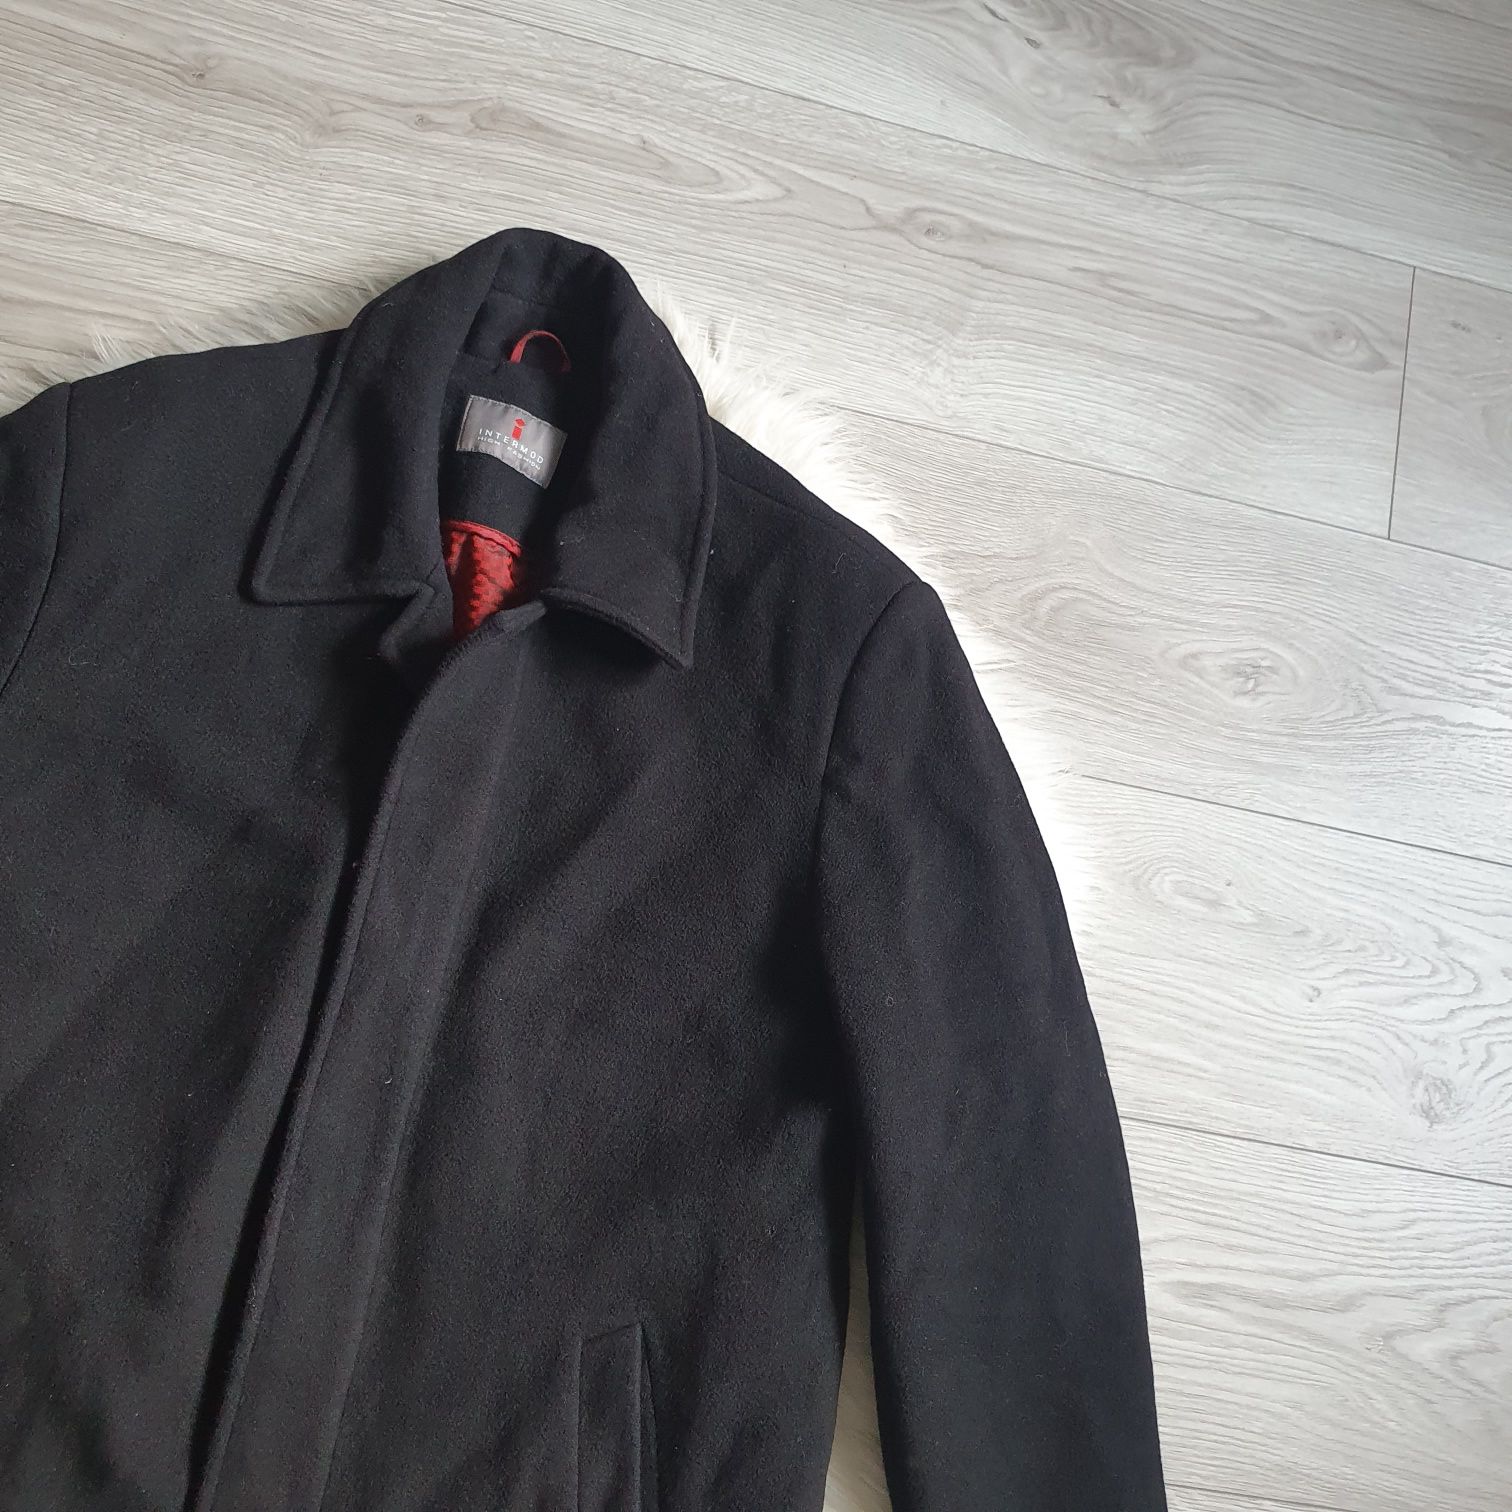 Płaszcz męski czarny wełniany kaszmirowy wool cashmere L XL 40 42